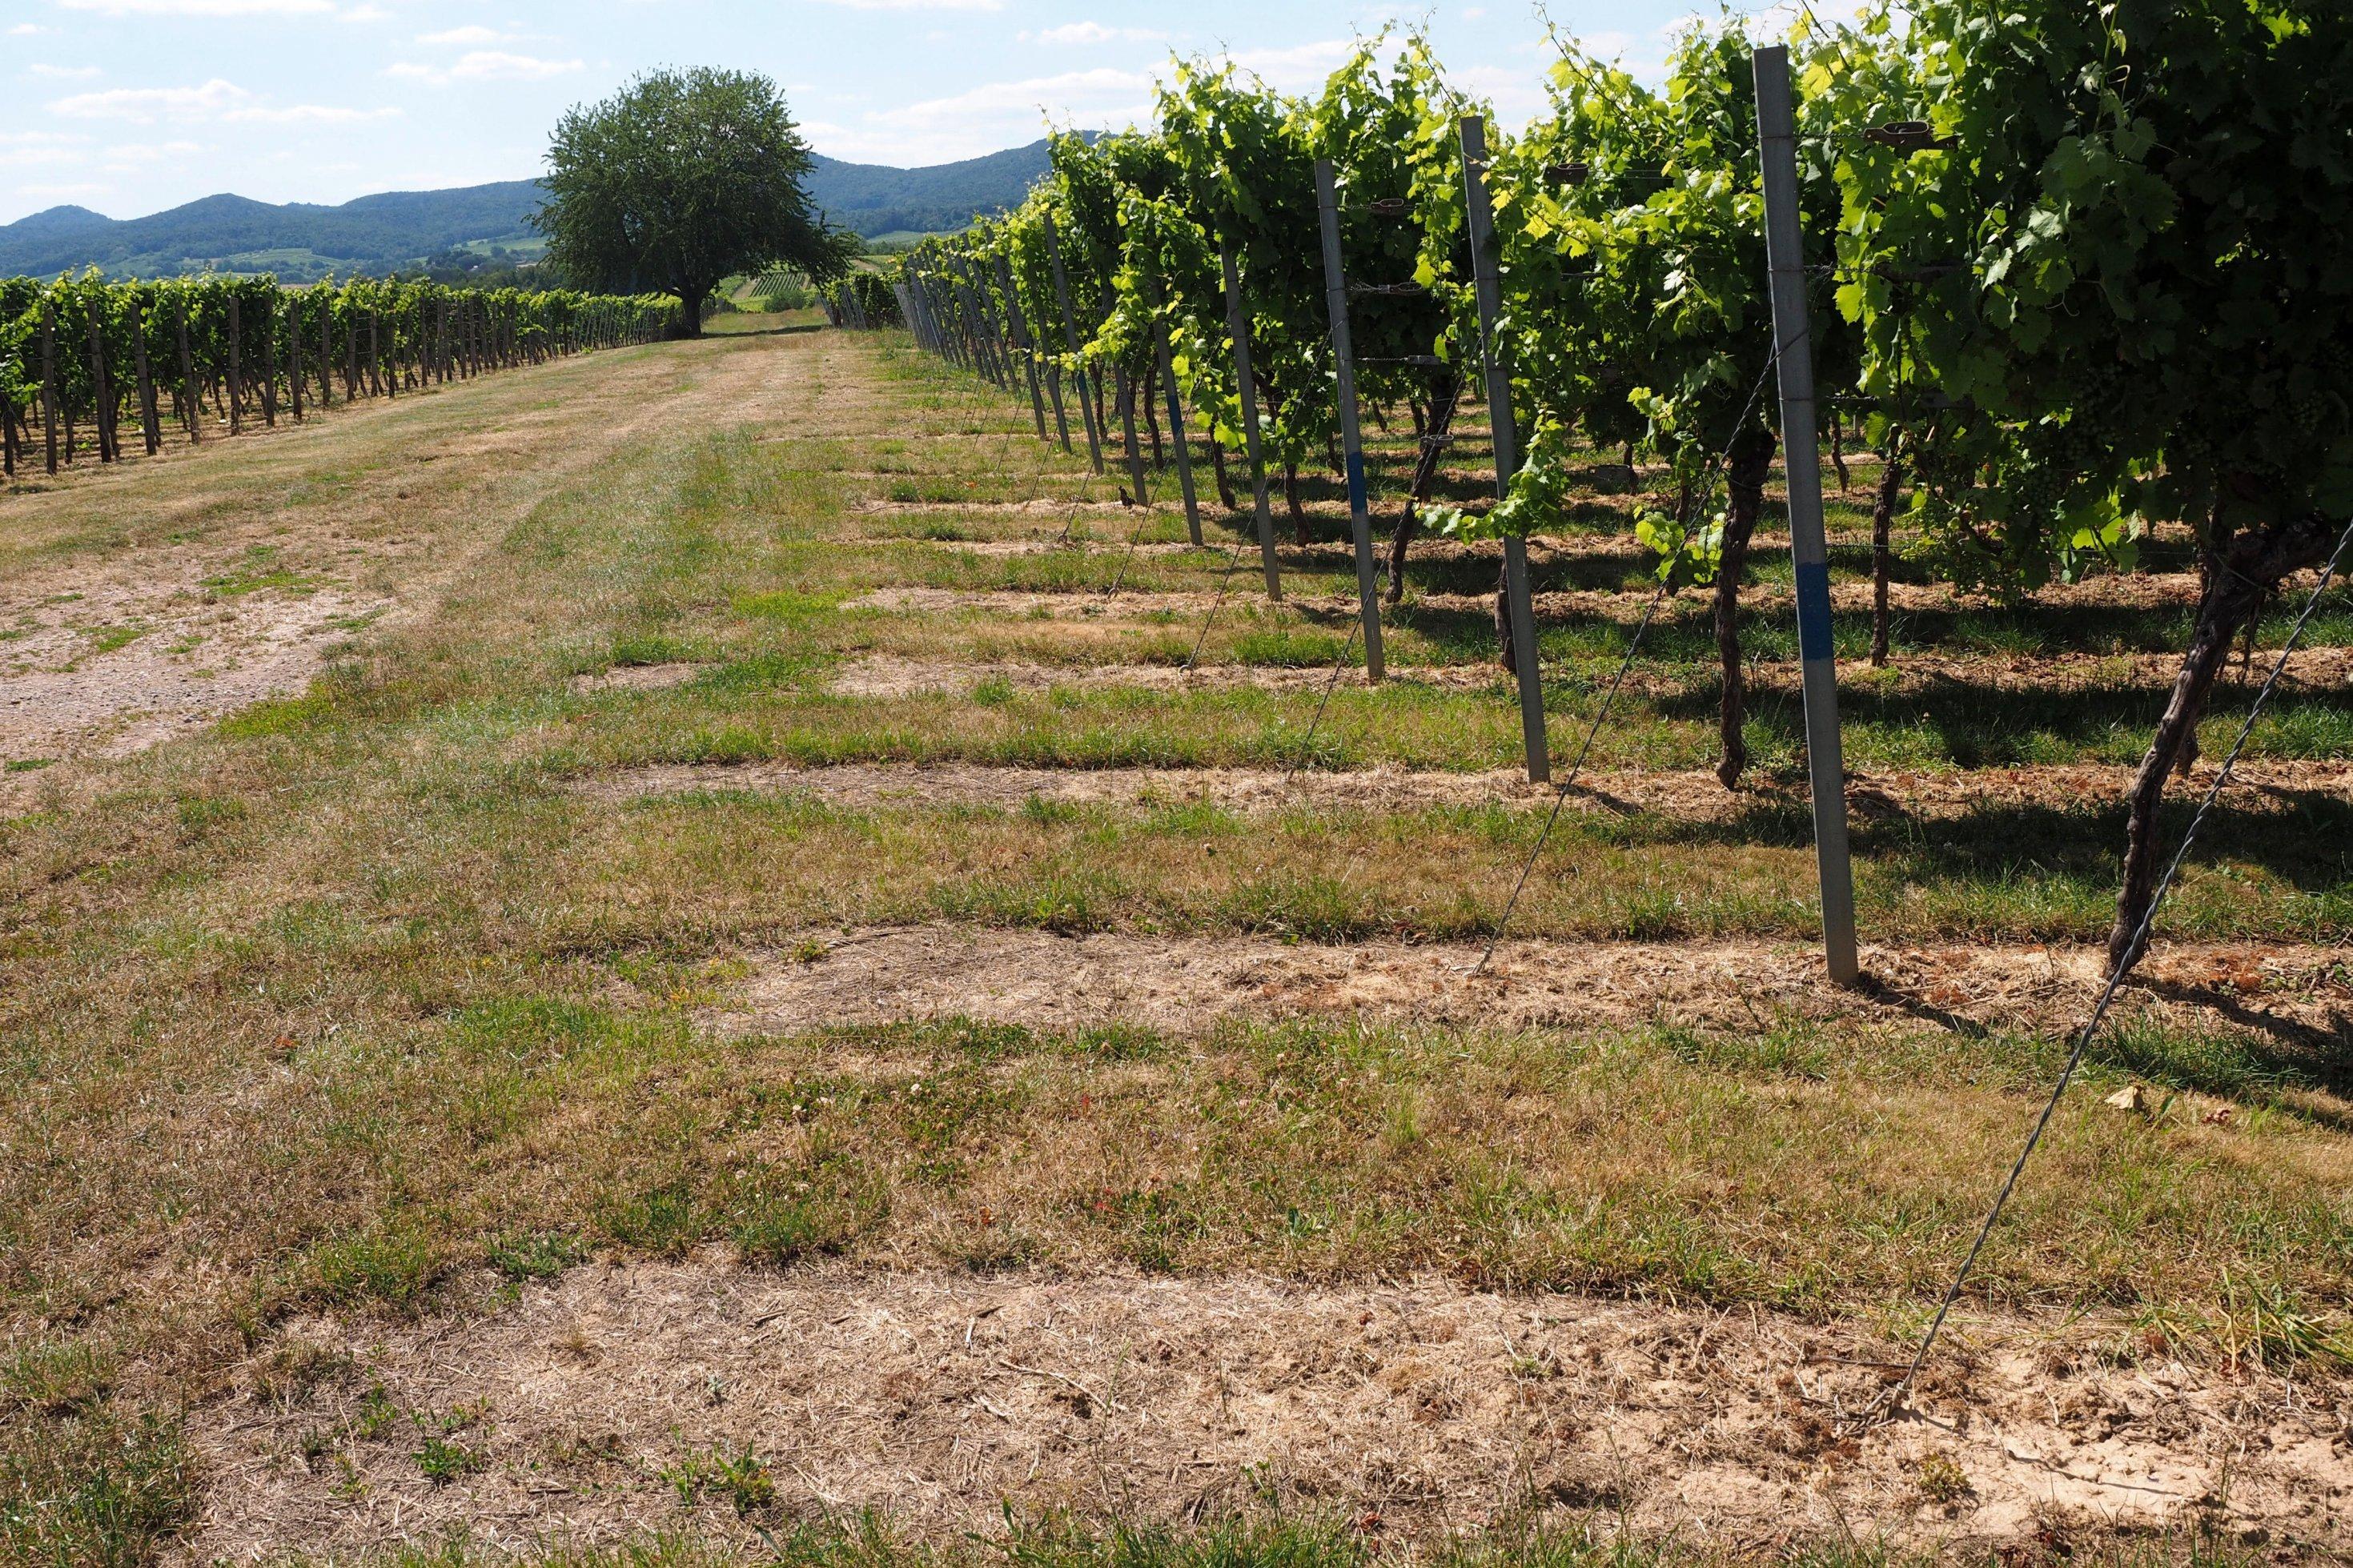 Halbtotale Weinbaugebiet. Gut sichtbar sind die bräunlichen Stellen unter den Weinstöcken. Dort kam Glyphosat zum Einsatz.